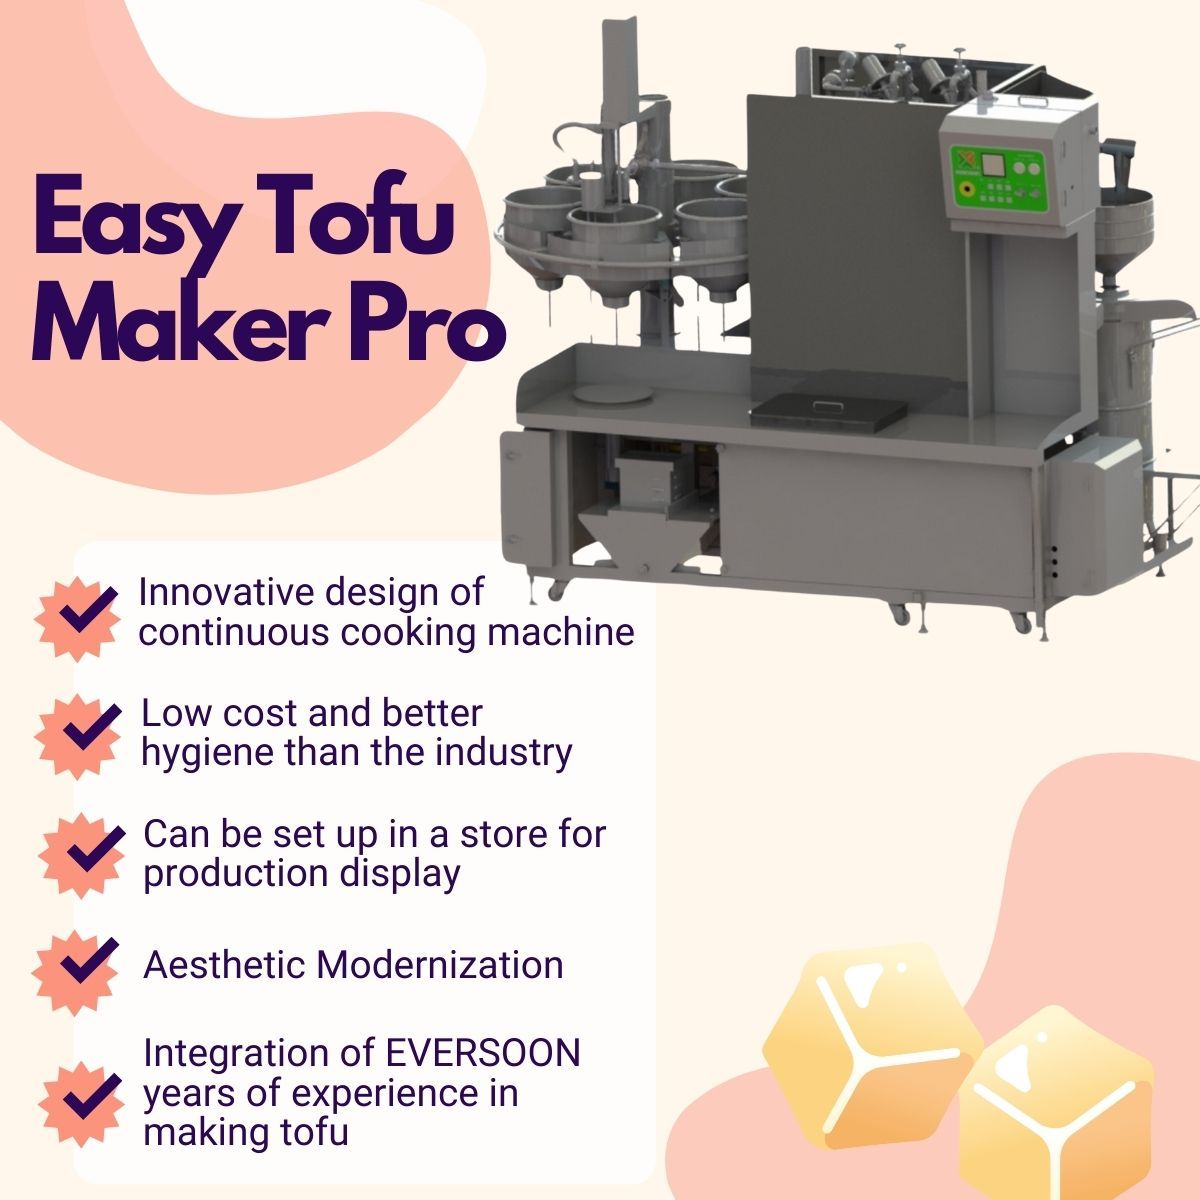 Mașină automată de fabricat tofu, Easy Tofu Maker, Mașină de tofu prăjit, Fabricare industrială de tofu, mașină de tofu mică, Echipament pentru produse din soia, mașină de carne din soia, mașină de făcut lapte și tofu din soia, echipament pentru tofu, mașină de tofu, mașină de tofu de vânzare, producător de mașini de tofu, producător de mașini de tofu, preț mașină de tofu, echipamente de tofu, mașină de tofu, mașină de tofu, echipamente de fabricare a tofu-ului, mașină de fabricat tofu, preț mașină de fabricat tofu, producători de tofu, fabricarea tofu-ului, echipamente de fabricare a tofu-ului, fabrica de fabricare a tofu-ului, echipamente de producție a tofu-ului, linie de producție a tofu-ului, preț linie de producție a tofu-ului, fabricant de tofu, mașină automată de tofu, mașină de carne vegană, linie de producție de carne vegană, echipamente și utilaje pentru tofu din legume, mașină de tofu comercială, mașină automată de lapte de soia, mașină automată de preparare a laptelui de soia, fabricant de tofu ușor, producția de lapte de soia, mașină de băut soia, lapte de soia și fabricarea de tofu mașină comercială de lapte de soia, mașină de fabricat lapte de soia și tofu, Mașină de gătit lapte de soia, mașină de lapte de soia, Mașină de lapte de soia fabricată în Taiwan, Mașină de lapte de soia, Mașină și echipament de lapte de soia, Fabricant de lapte de soia, Mașină de fabricat lapte de soia, Producători de lapte de soia, Producția de lapte de soia, echipamente pentru producția de lapte de soia, linie de producție de lapte de soia, prețul mașinii de fabricat lapte de soia, mașină de prelucrare a soia, mașină de făcut lapte de soia, mașină de făcut lapte de soia și tofu, producător comercial de lapte de soia, mașină comercială de lapte de soia, mașină de lapte de soia comercial, cazan de lapte de soia pentru uz comercial, râșniță de lapte de soia pentru uz comercial, mașină de lapte de soia pentru uz comercial, mașini de lapte de soia pentru uz comercial, echipamente de fabricare a laptelui de soia pentru magazin